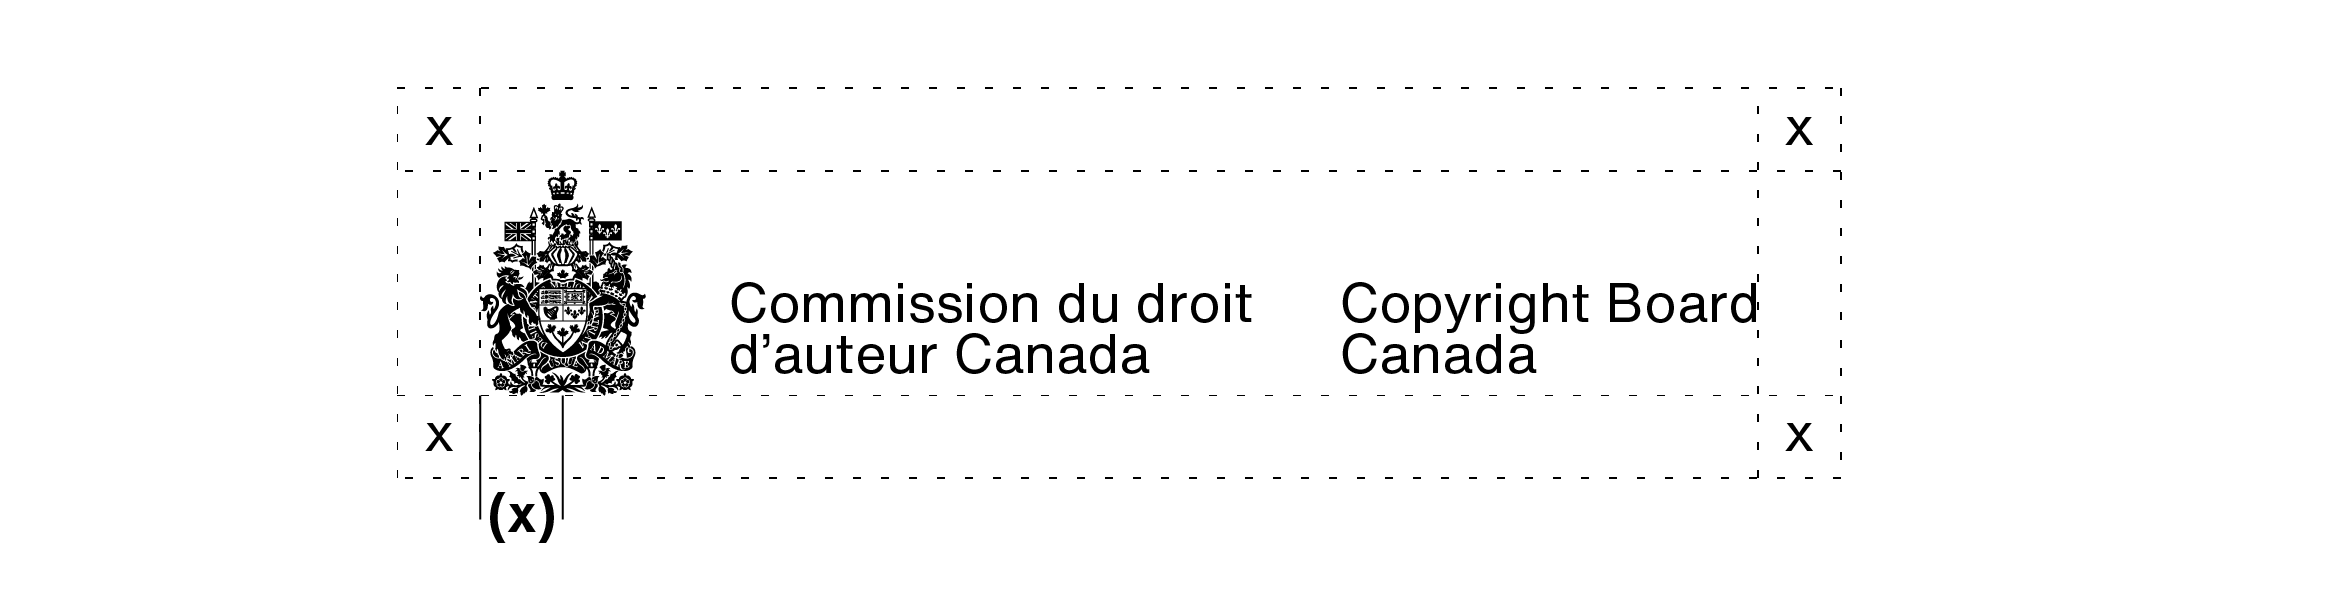 Signature avec armoiries de la Commission du droit d’auteur Canada (sur 2 lignes). L’espace libre à laisser autour d’une signature avec armoiries sur 2 lignes est expliqué dans le texte ci-dessus.